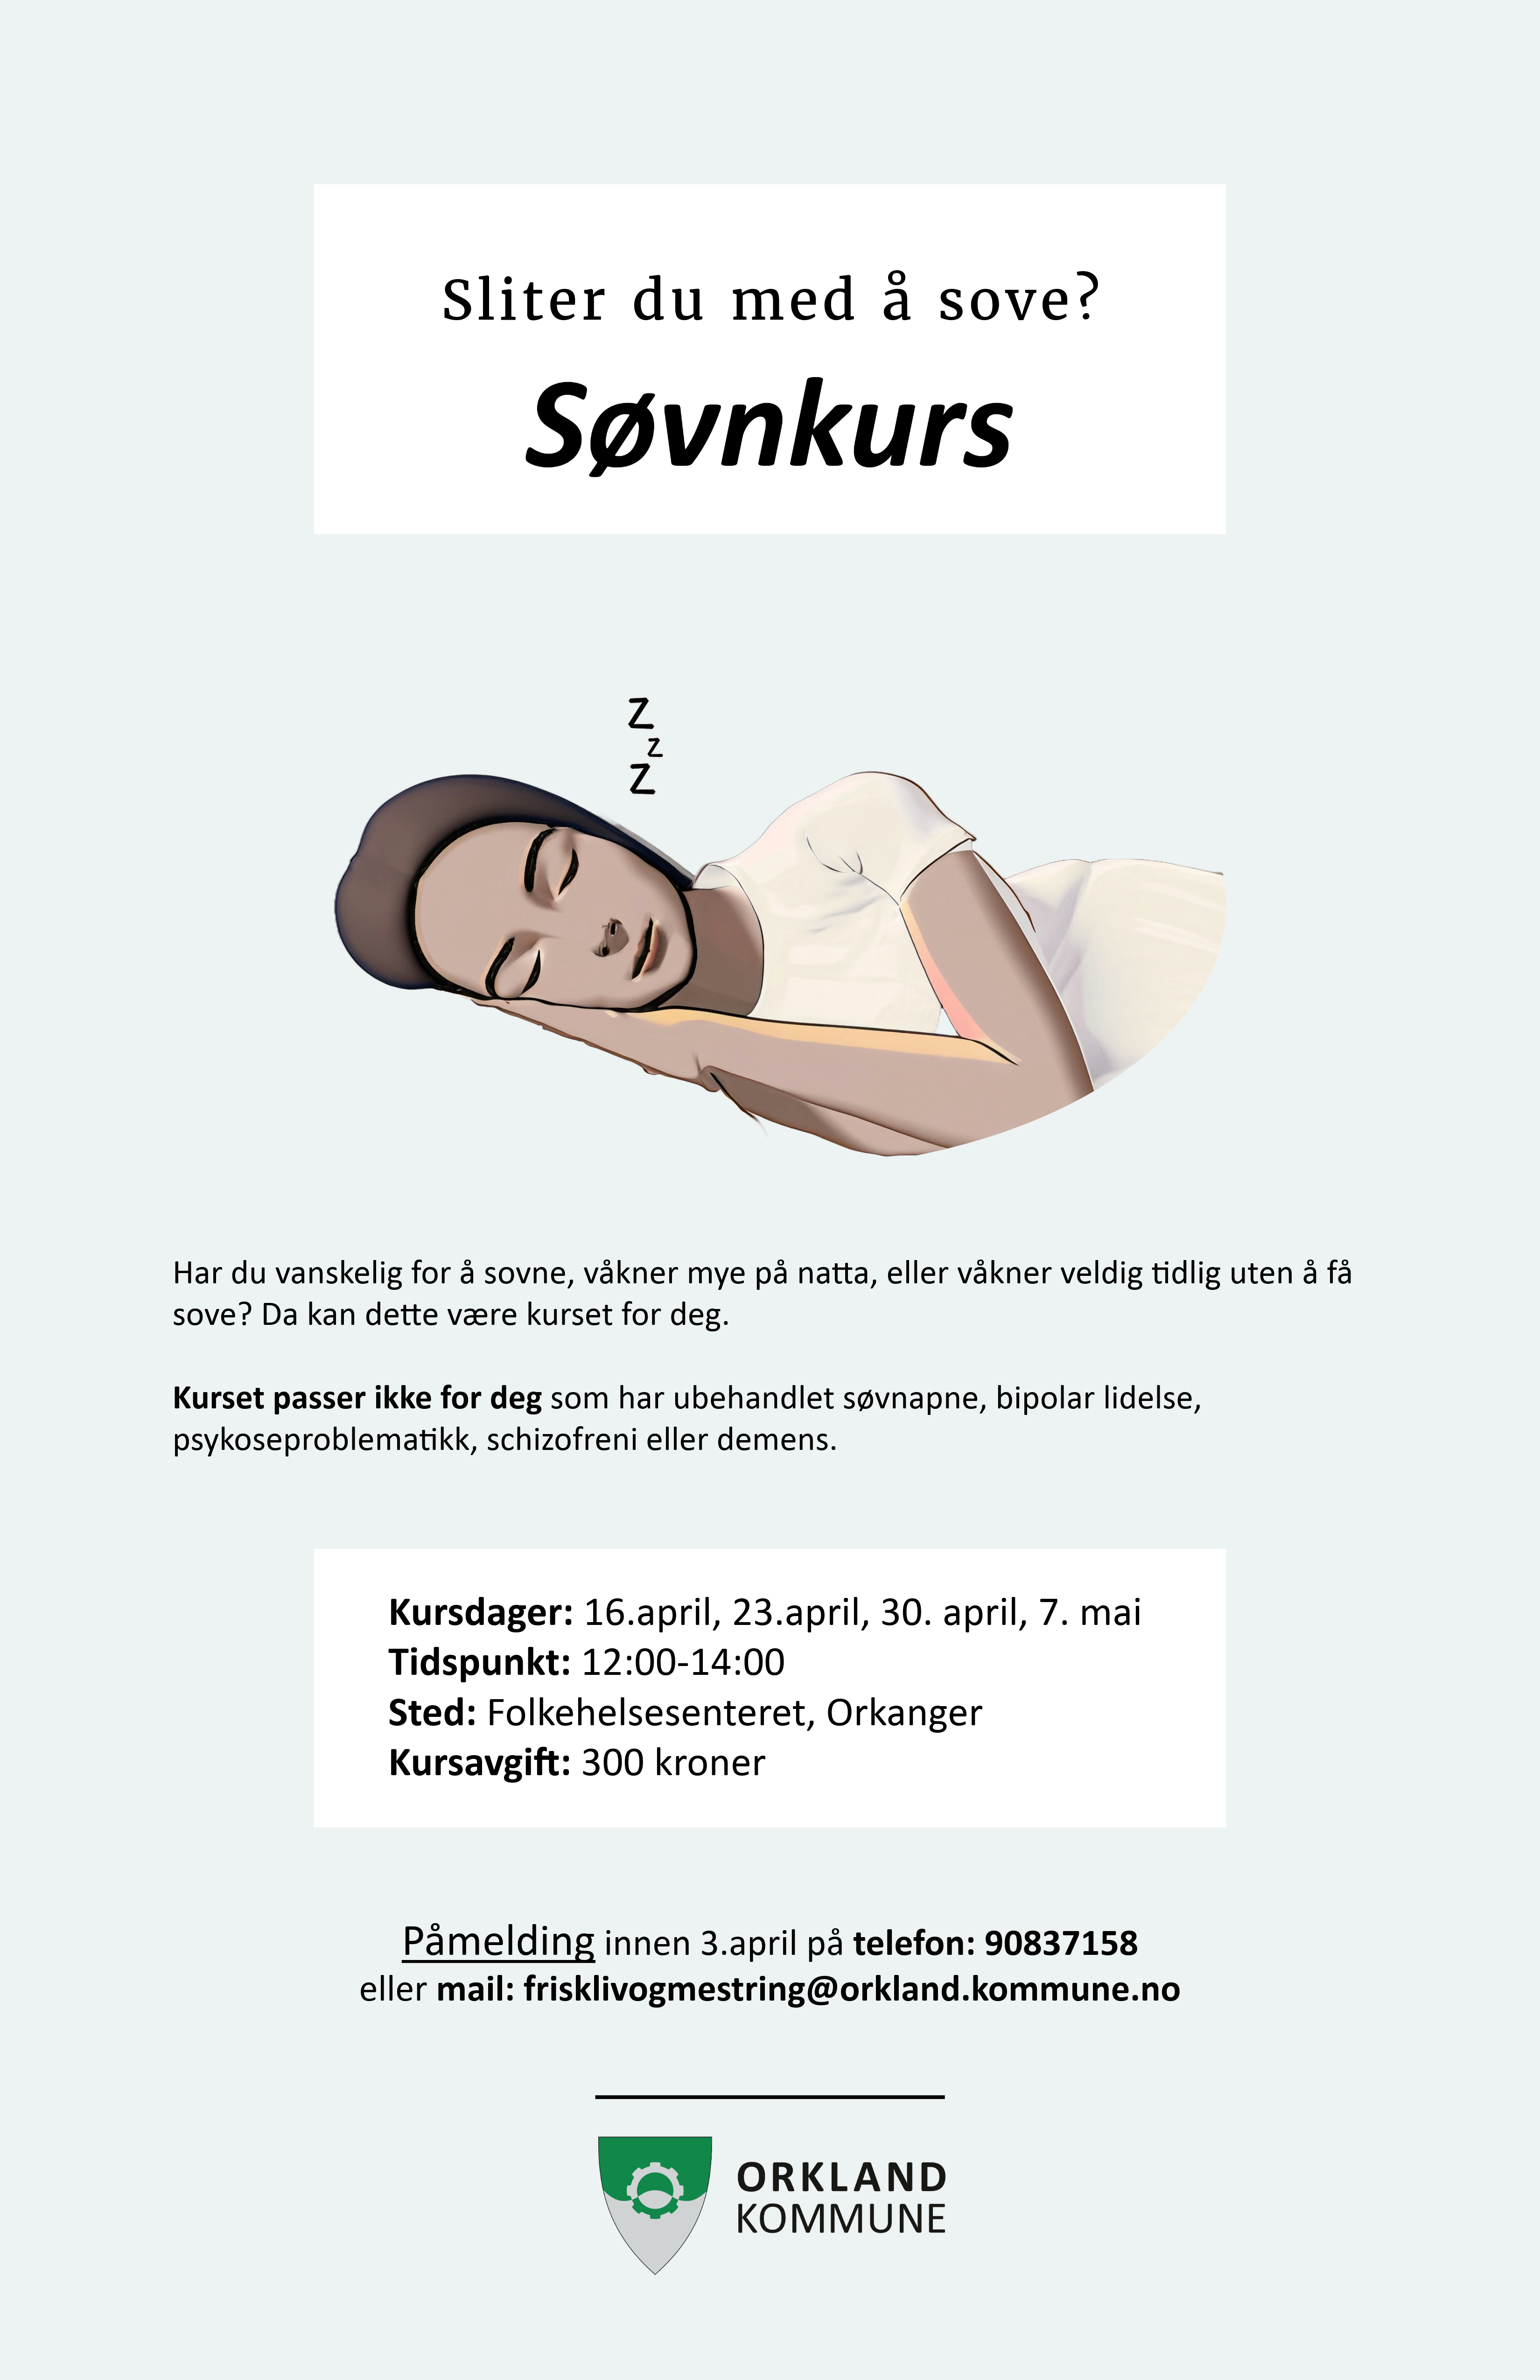 Plakat med informasjon om søvnkurs